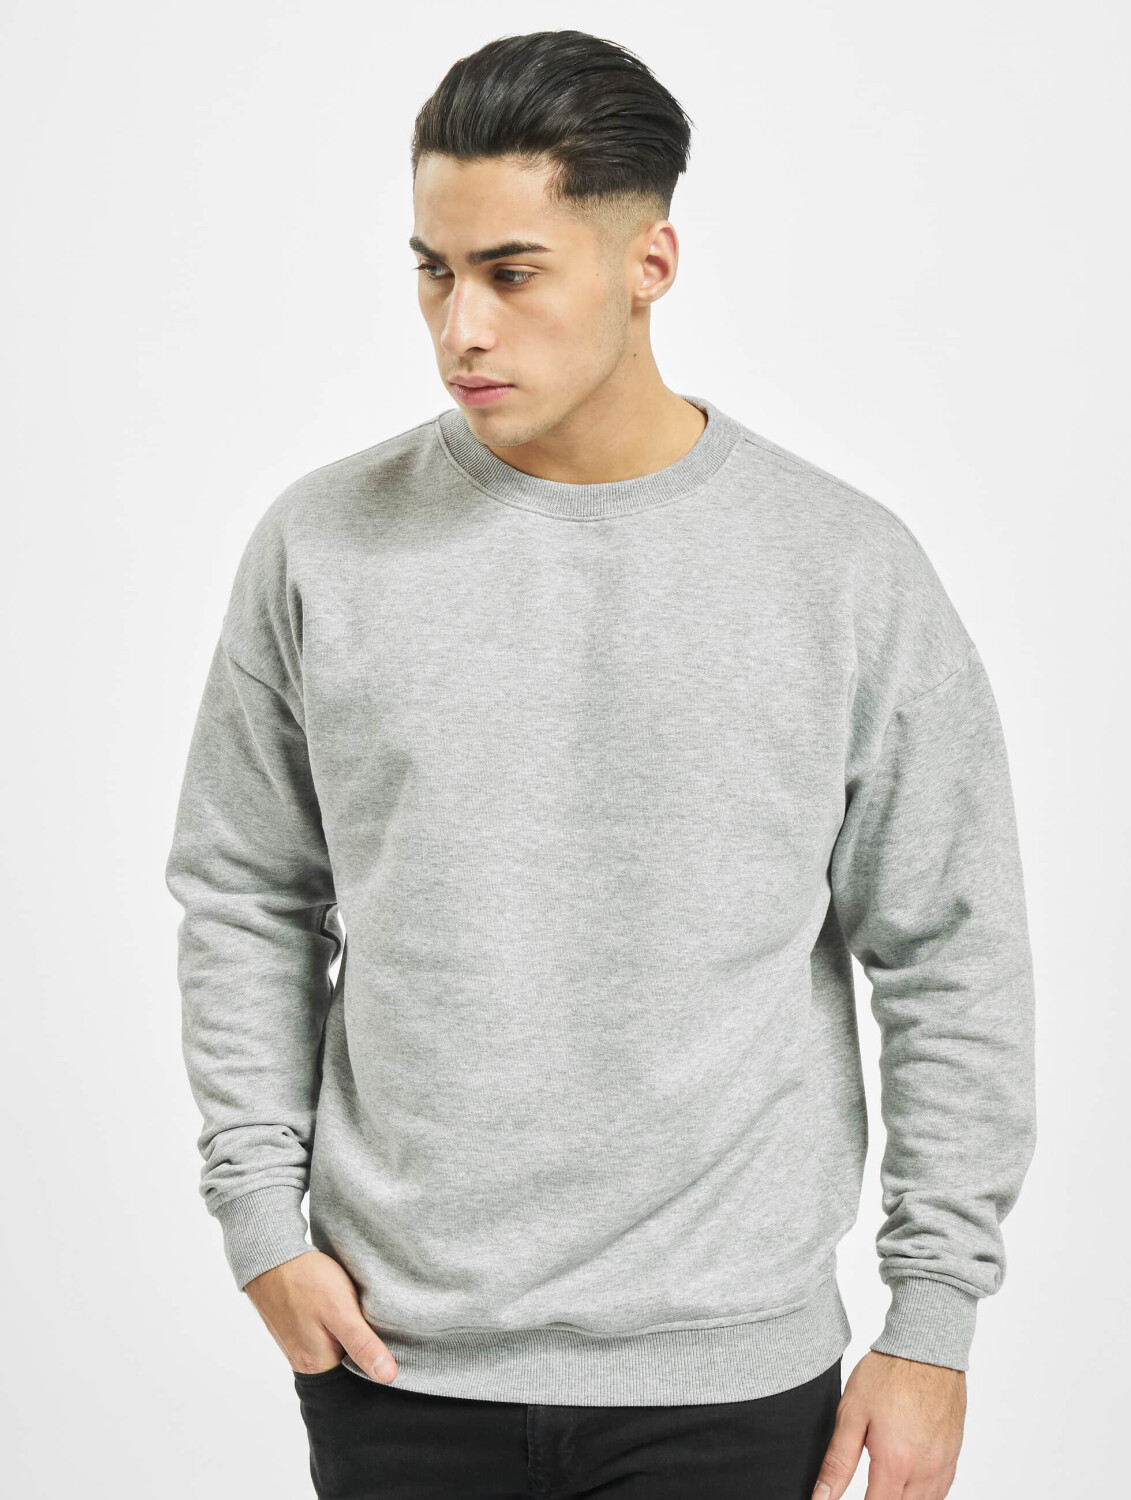 Urban Classics Sweatshirt Camden grey ab bei € Preisvergleich | 22,99 (TB1591GRY)